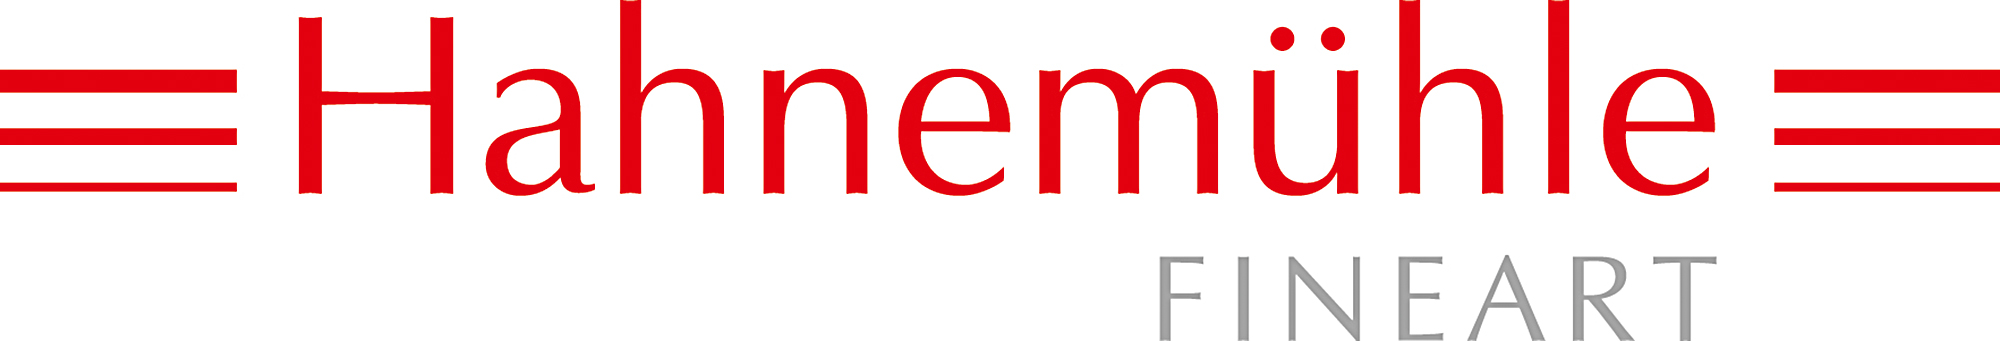 Hahnemuhle-logo